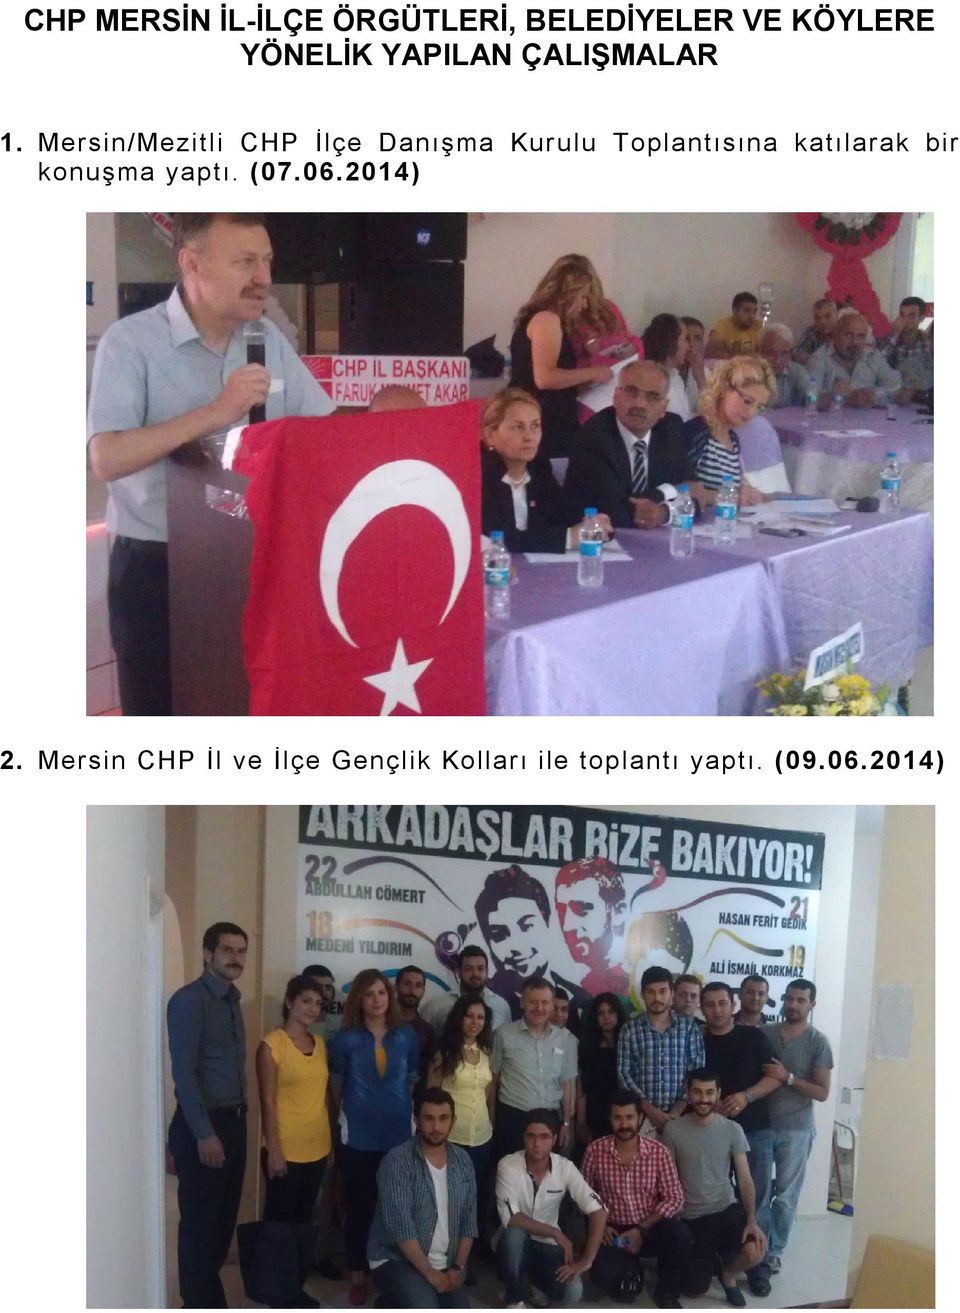 Mersin/Mezitli CHP İlçe Danışma Kurulu Toplantısına katılarak